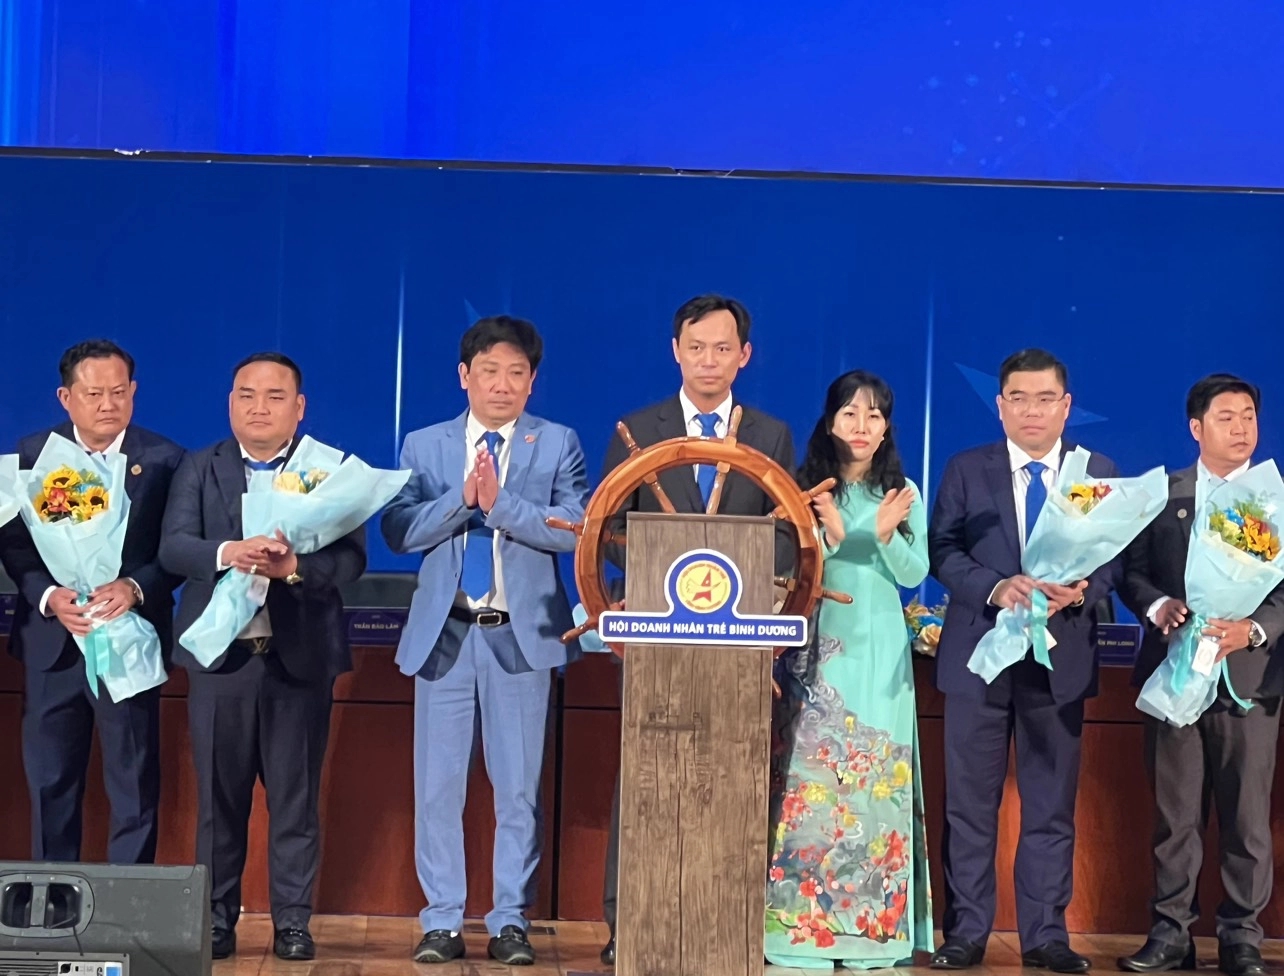 Con trai ông Huỳnh Uy Dũng được bầu làm Chủ tịch Hội Doanh nhân trẻ Bình Dương-2